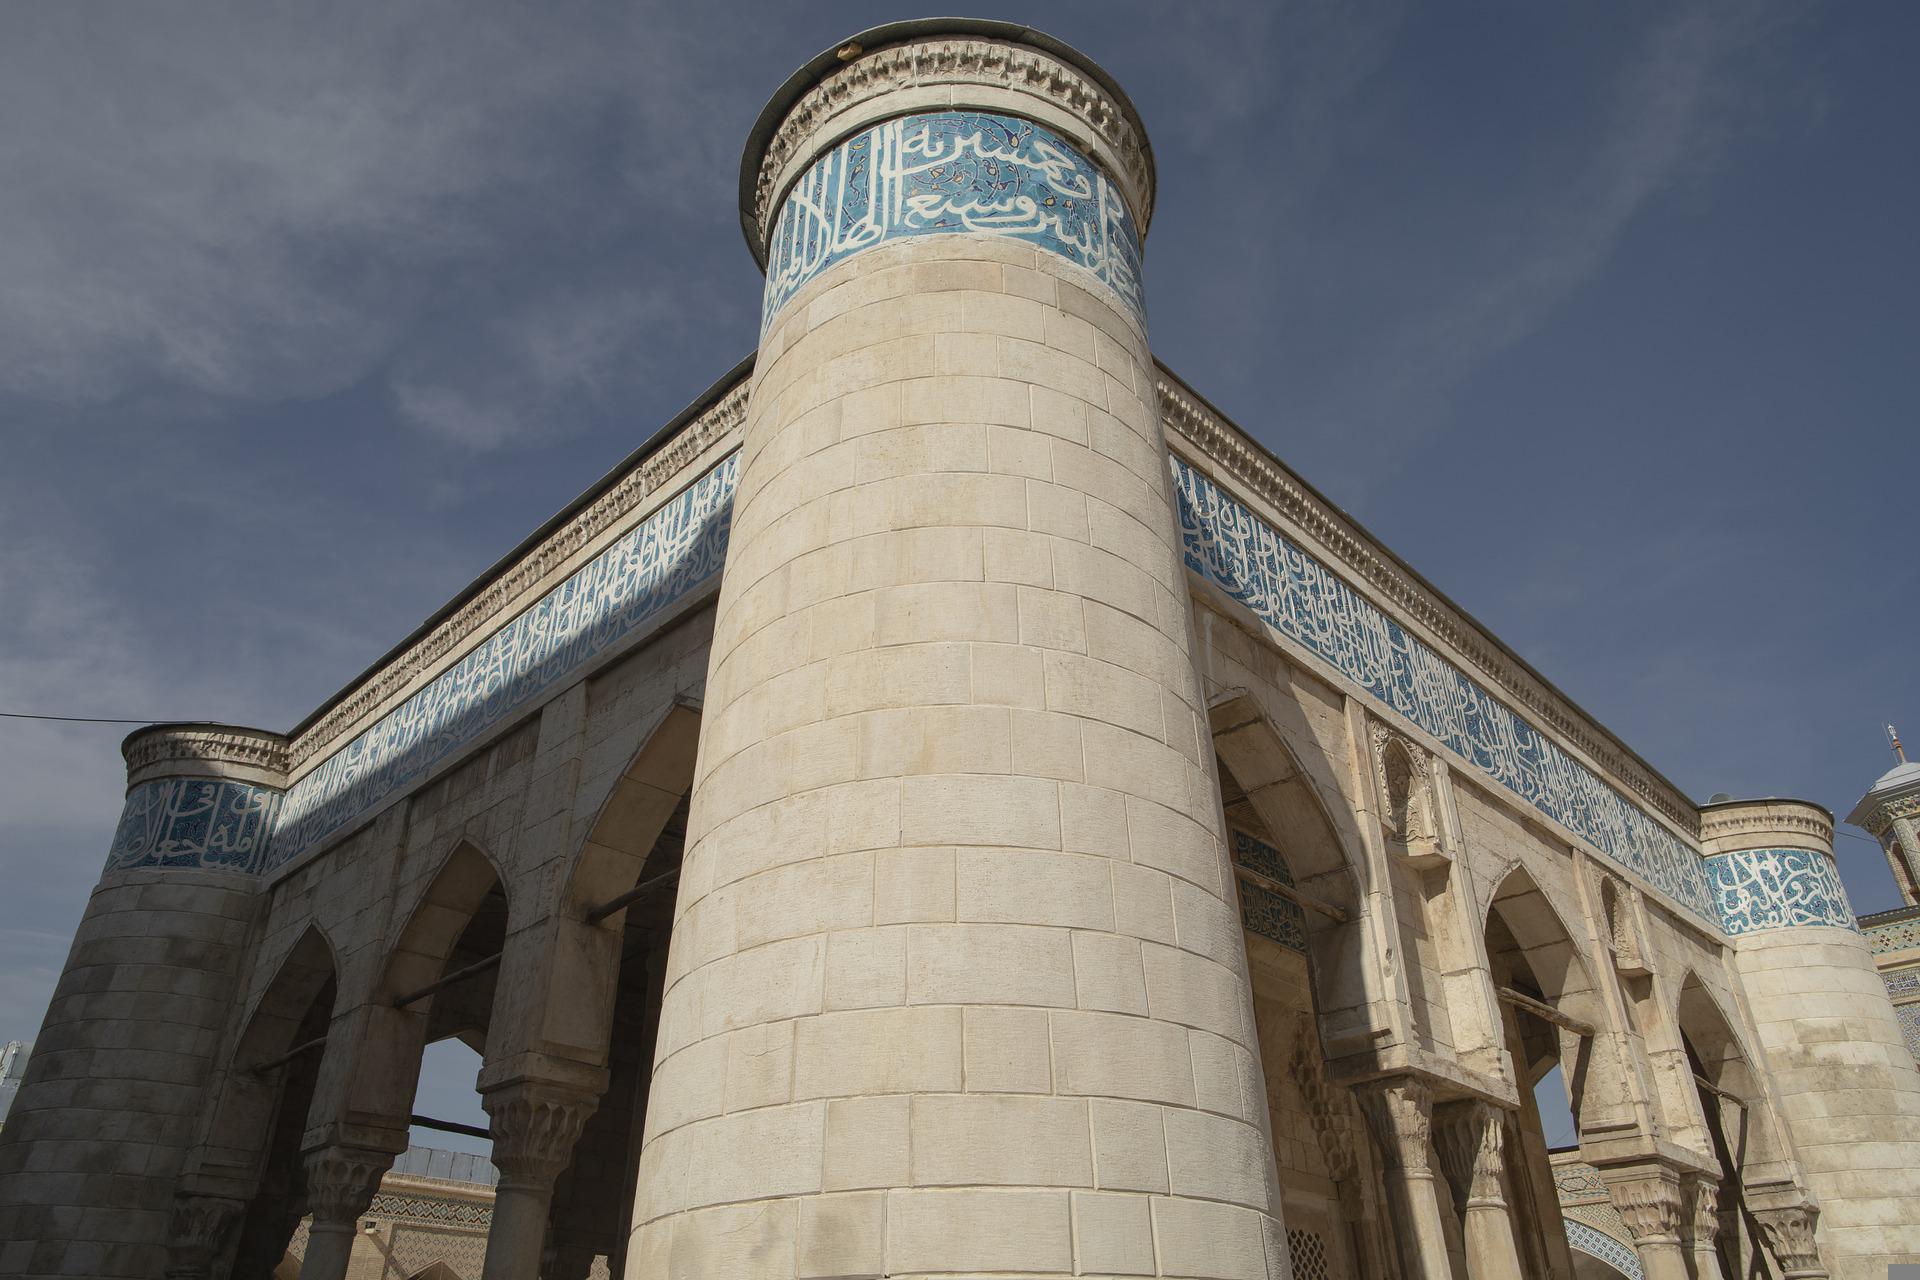 atiq-mosque-6718003_1920.jpg